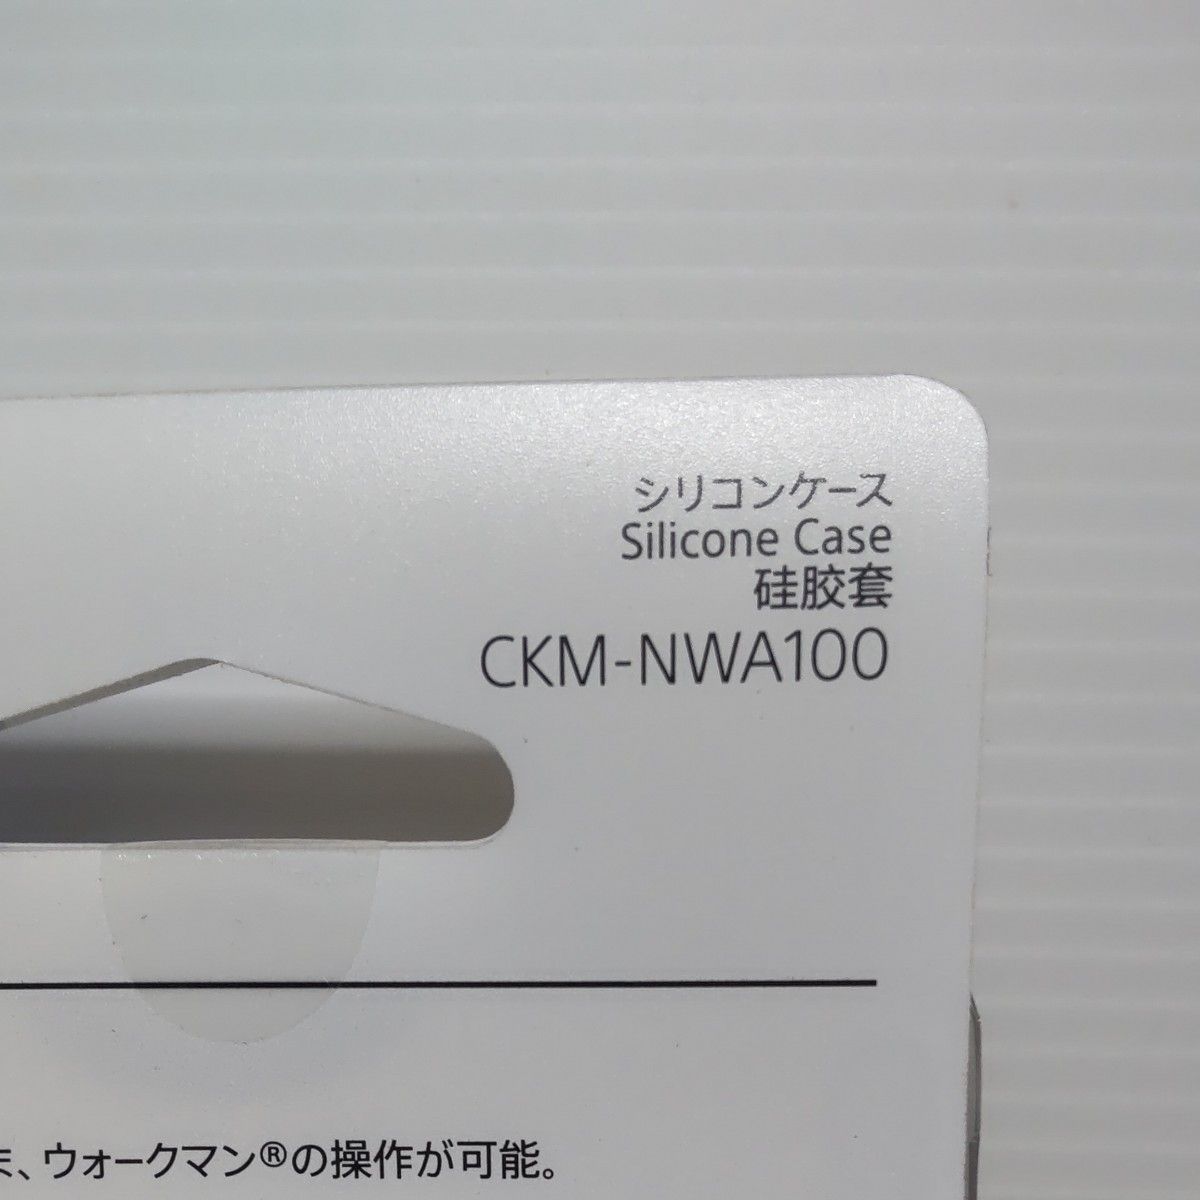 ソニー ウォークマン純正アクセサリー NW-A100シリーズ専用 シリコン